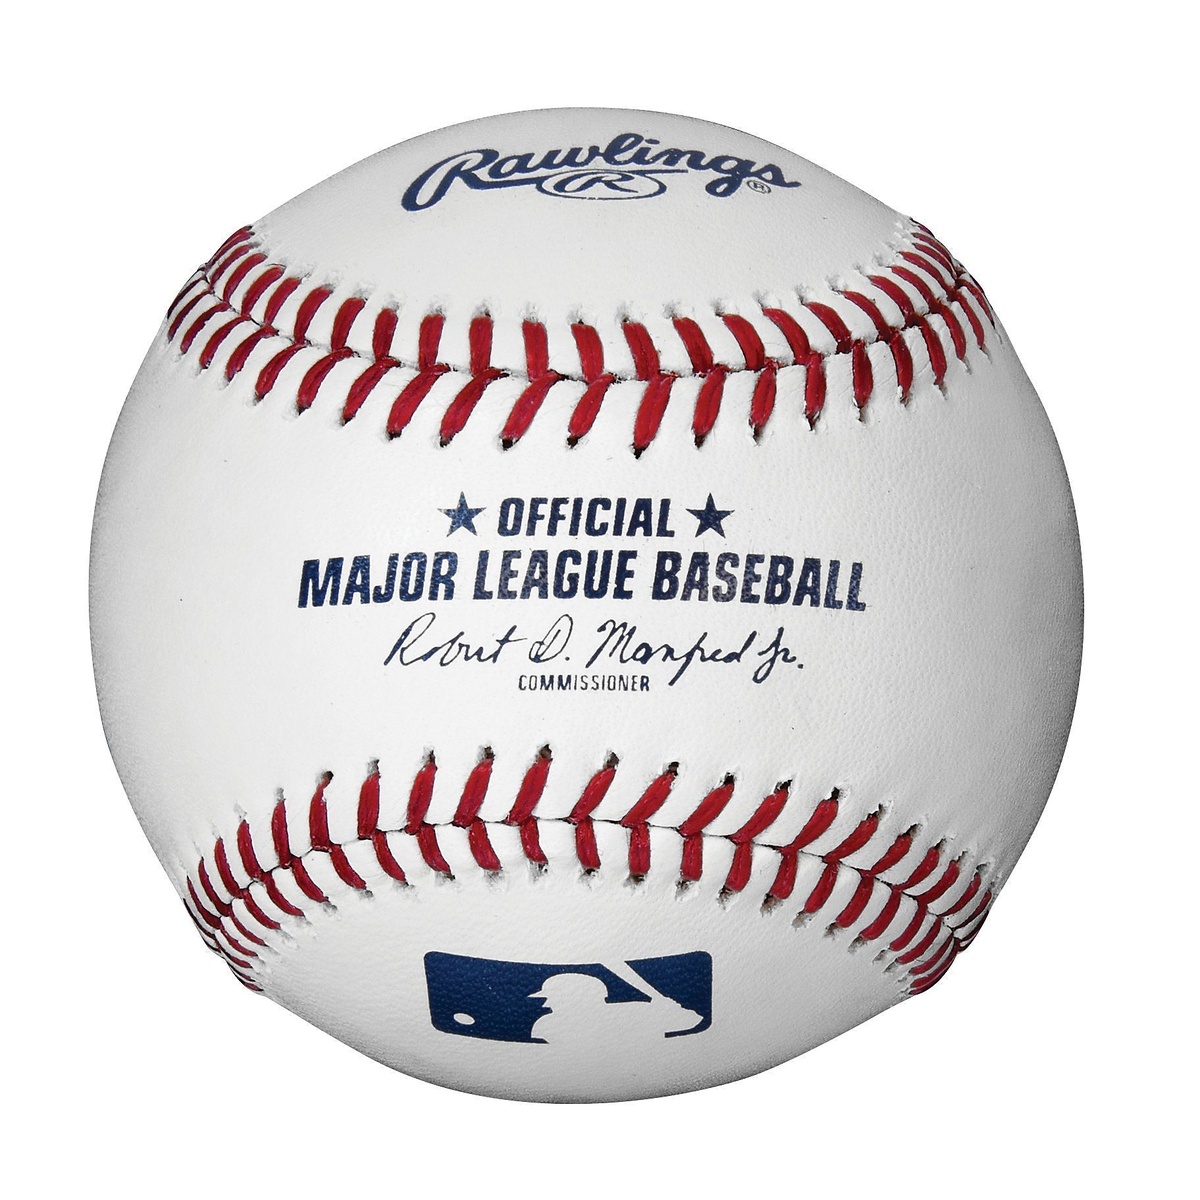 ローリングス 野球 硬式 ボール MLB公式試合球 Rawlings Rawlings (ローリングス) MLB公式試合球 野球 硬式 ボール - ROMLB6